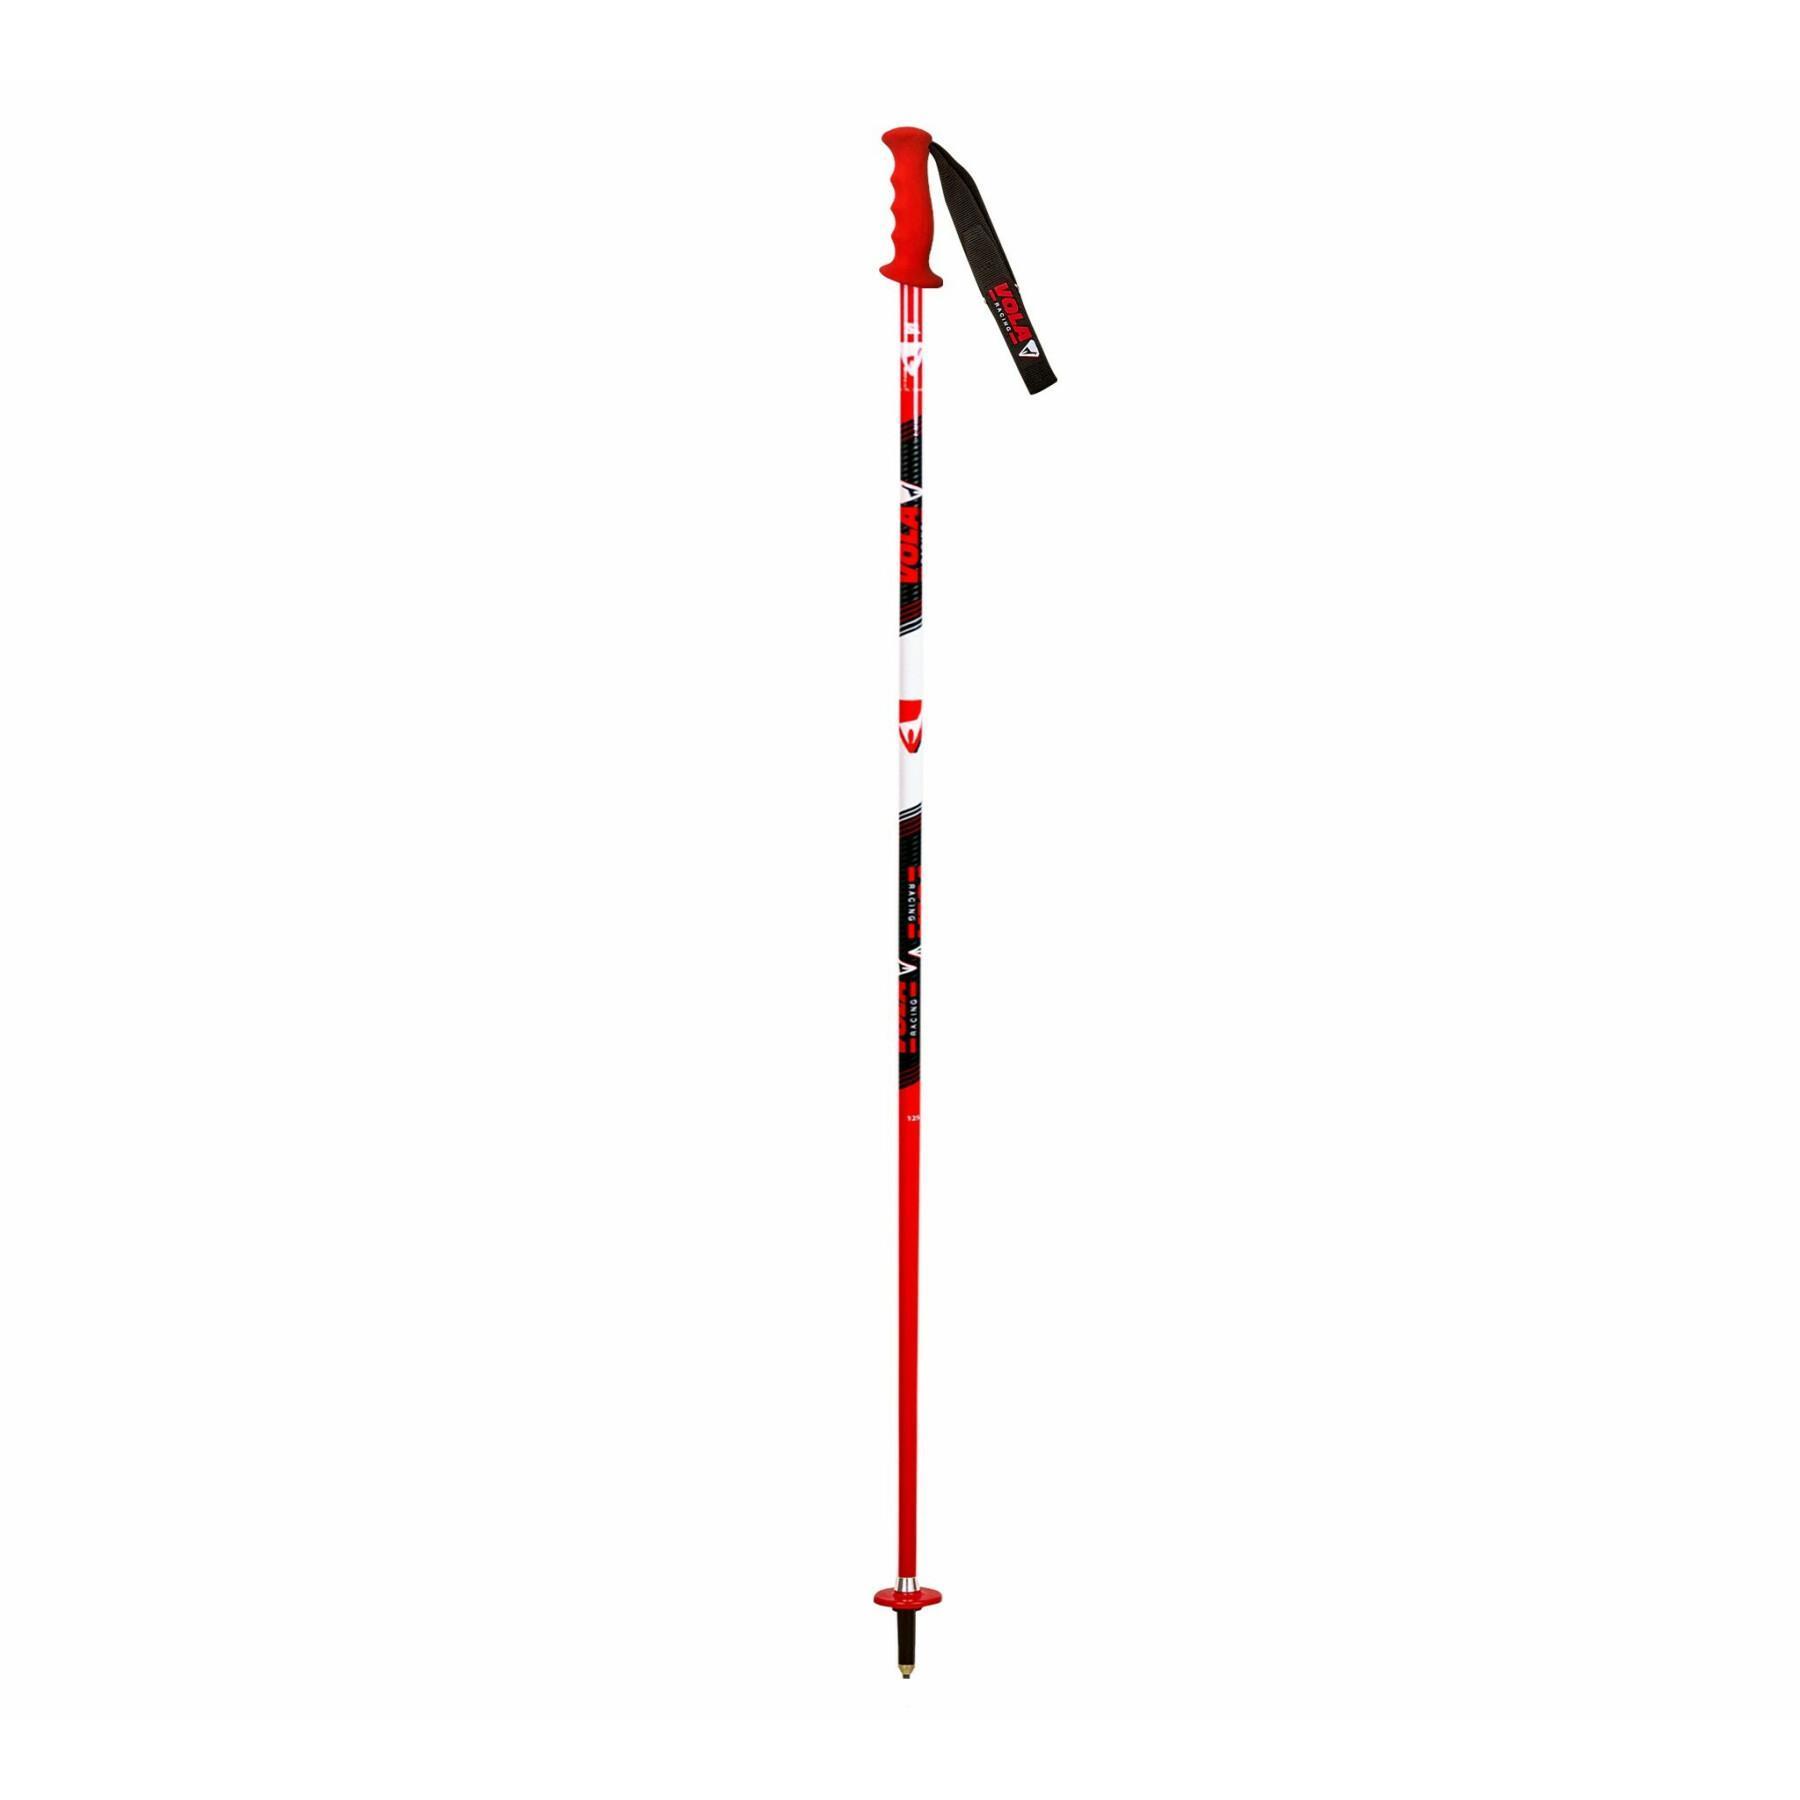 Bâton de ski de randonnée Vola Slalom 105 cm